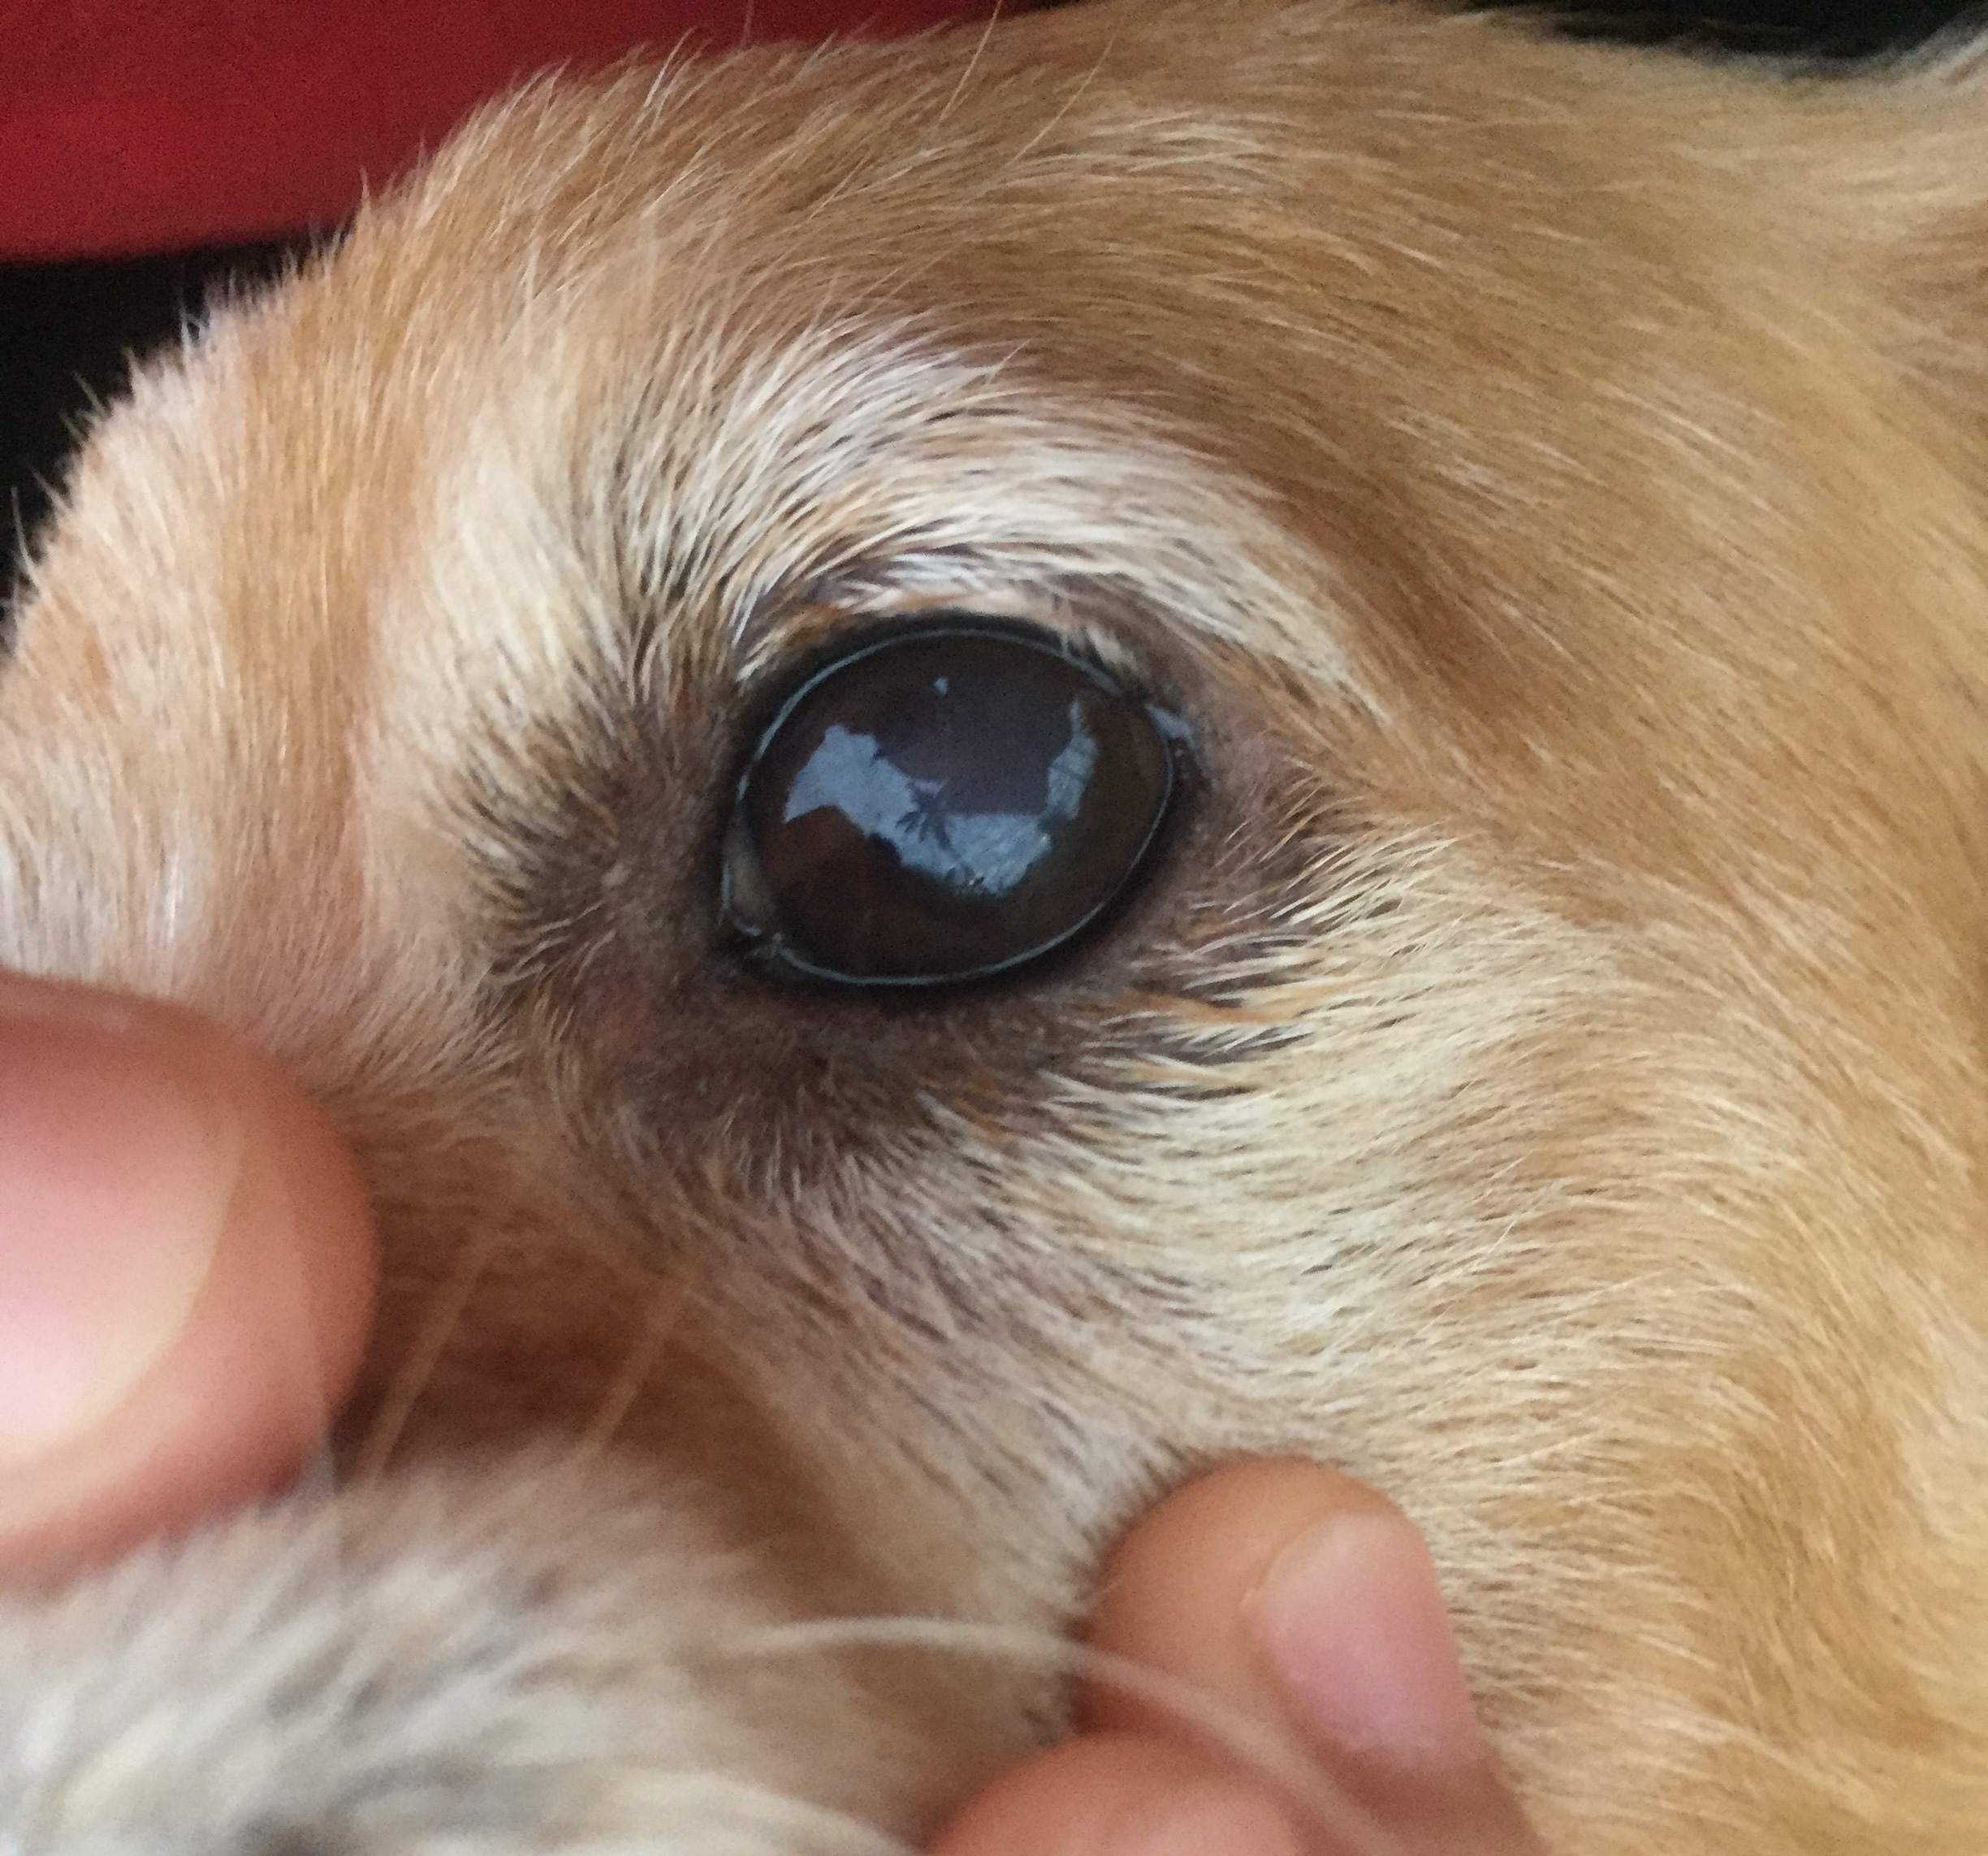 สุนัขที่บ้านอายุประมาณ 5-6 ขวบแล้ว มีฝ้าขาวๆที่ตาด้านซ้ายค่ะ